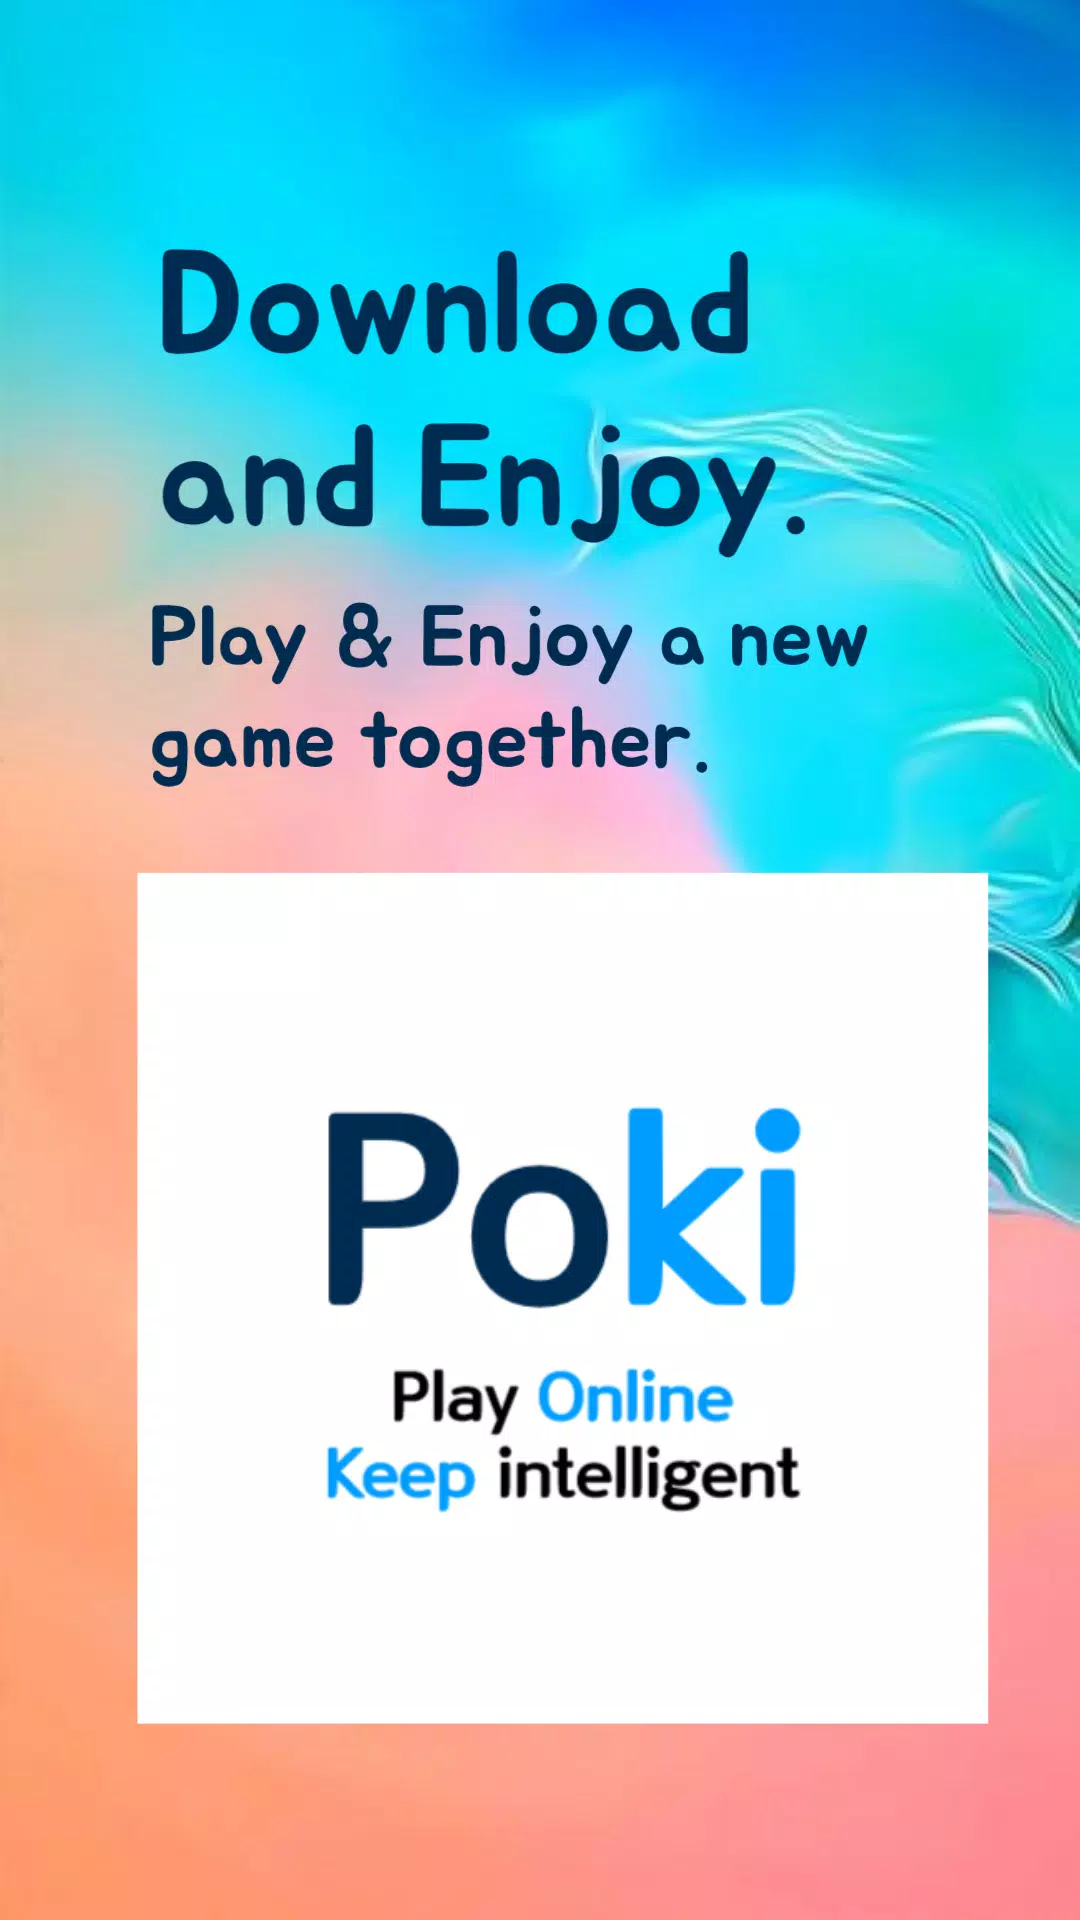 Poki games Pro APK (Android Game) - Baixar Grátis